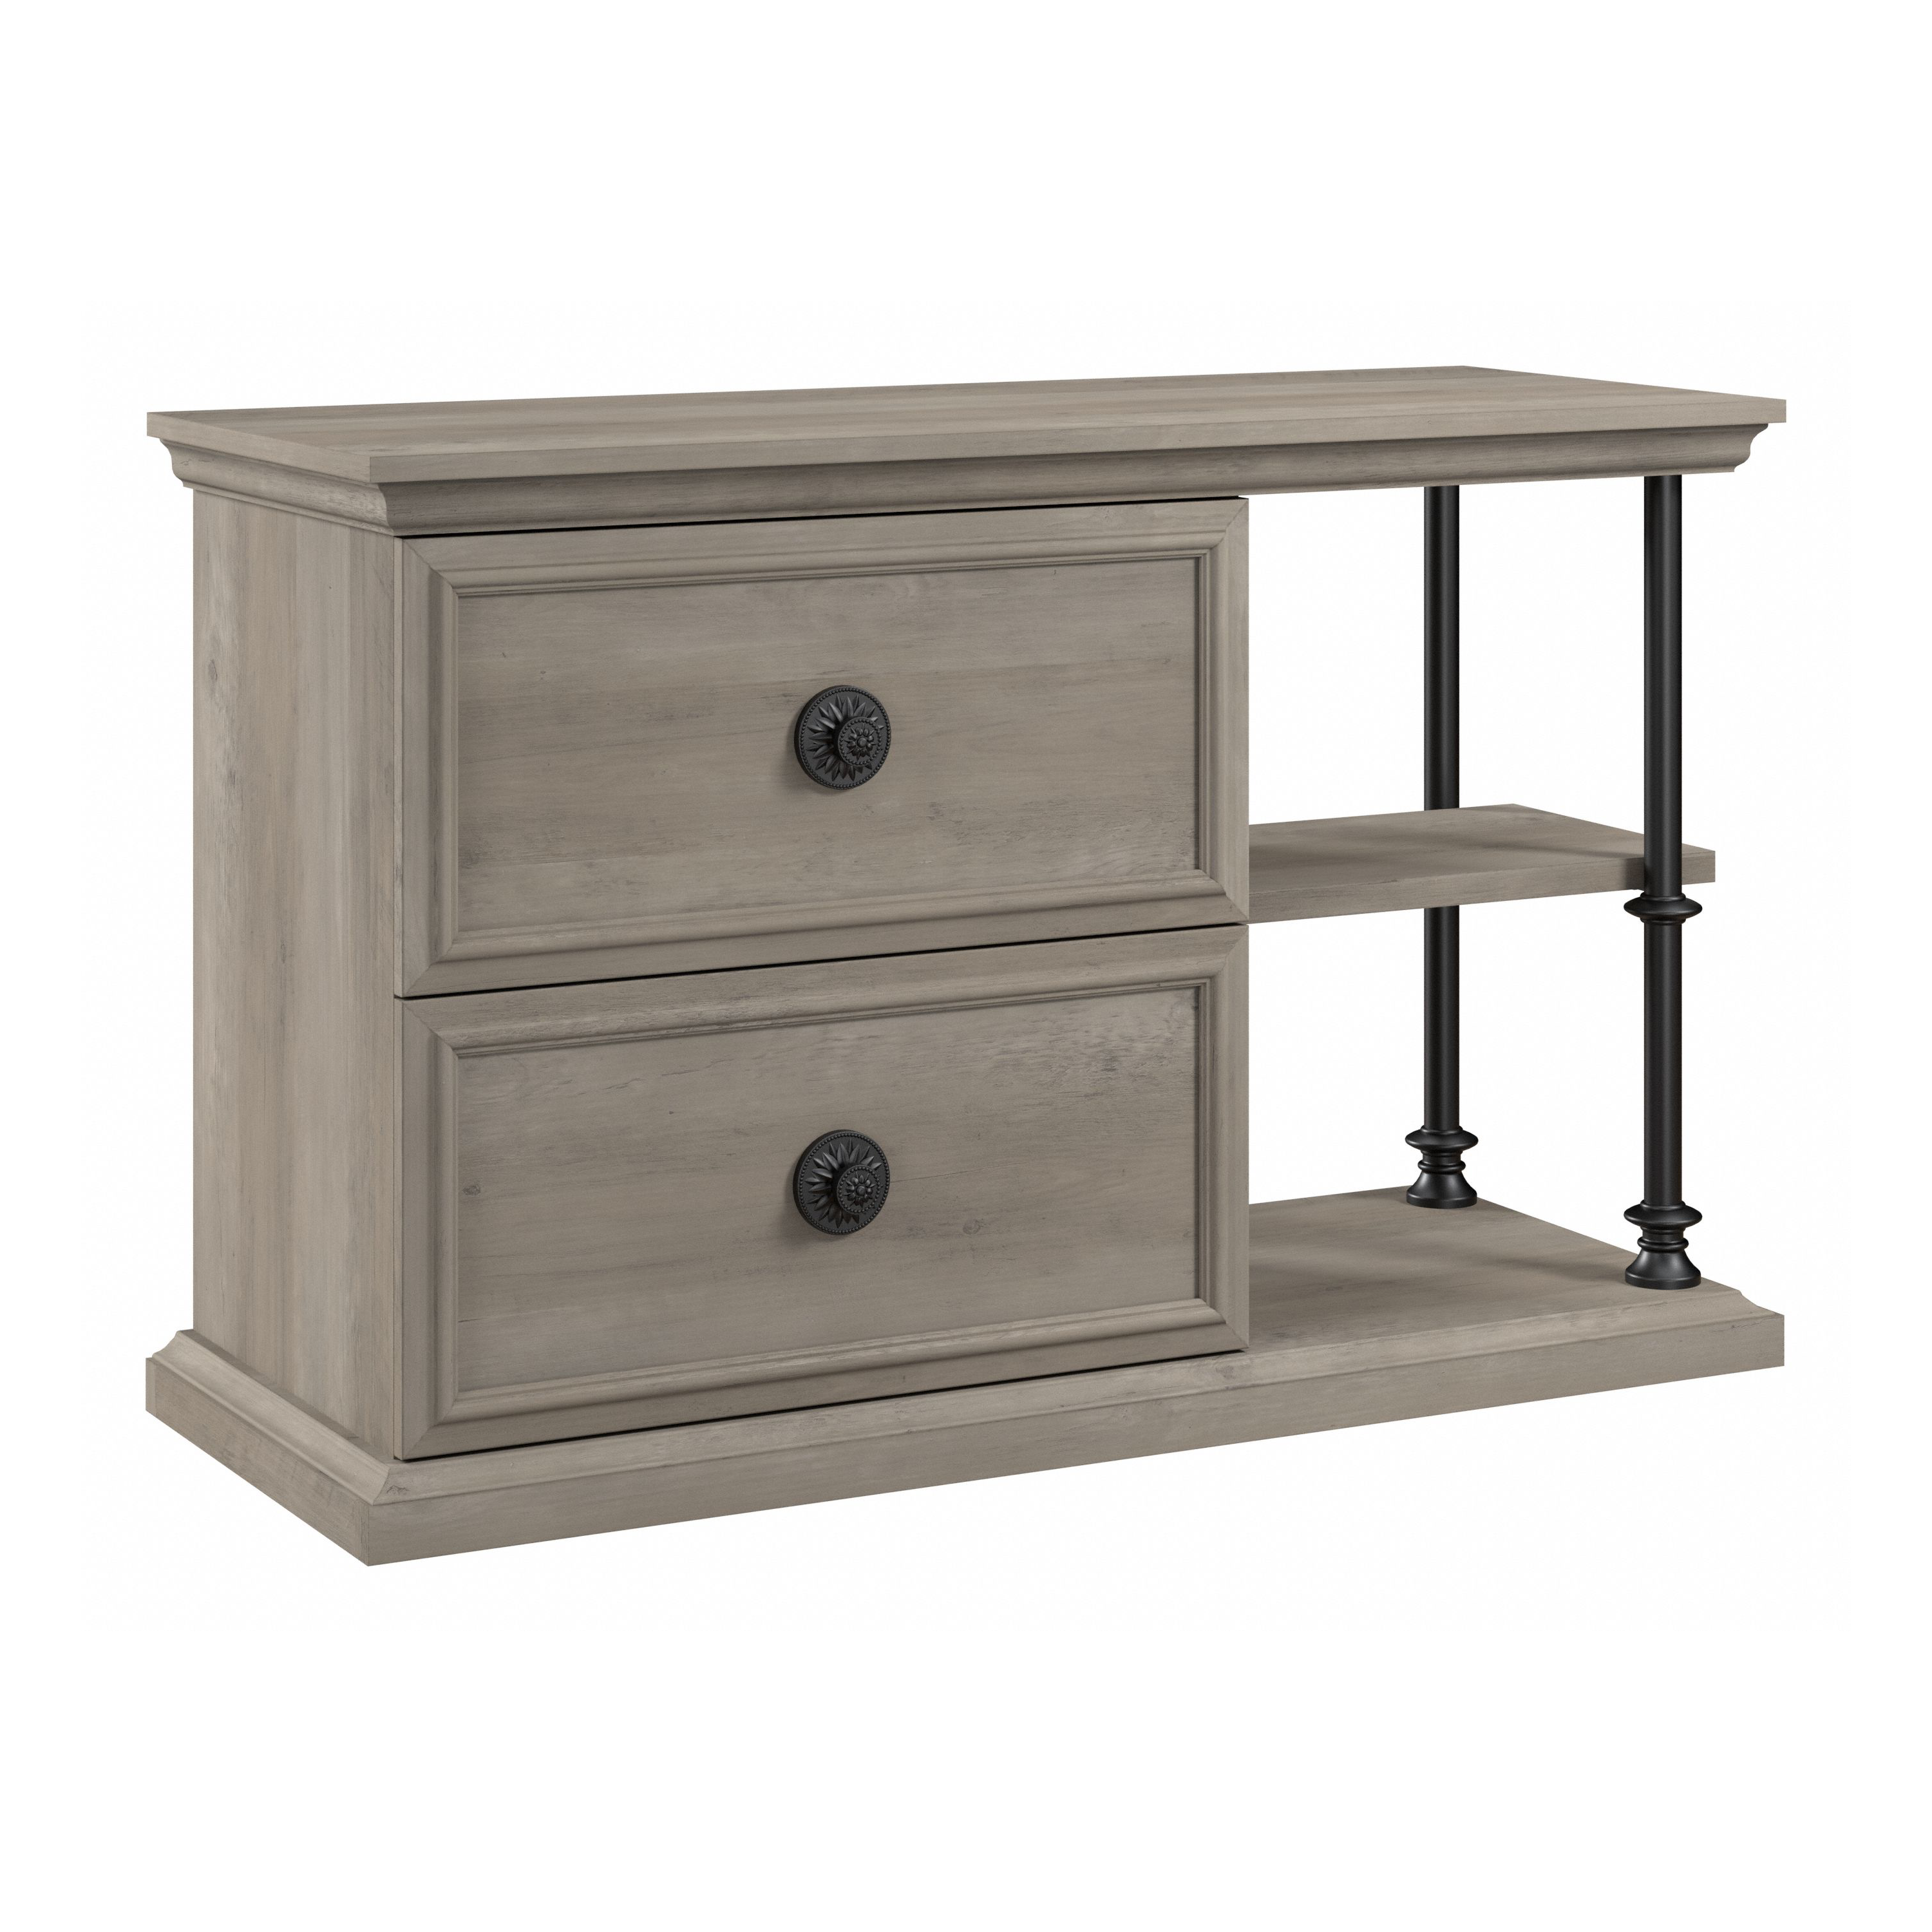 Shop Bush Furniture Coliseum Console Table with Storage 02 CSF147DG-Z #color_driftwood gray